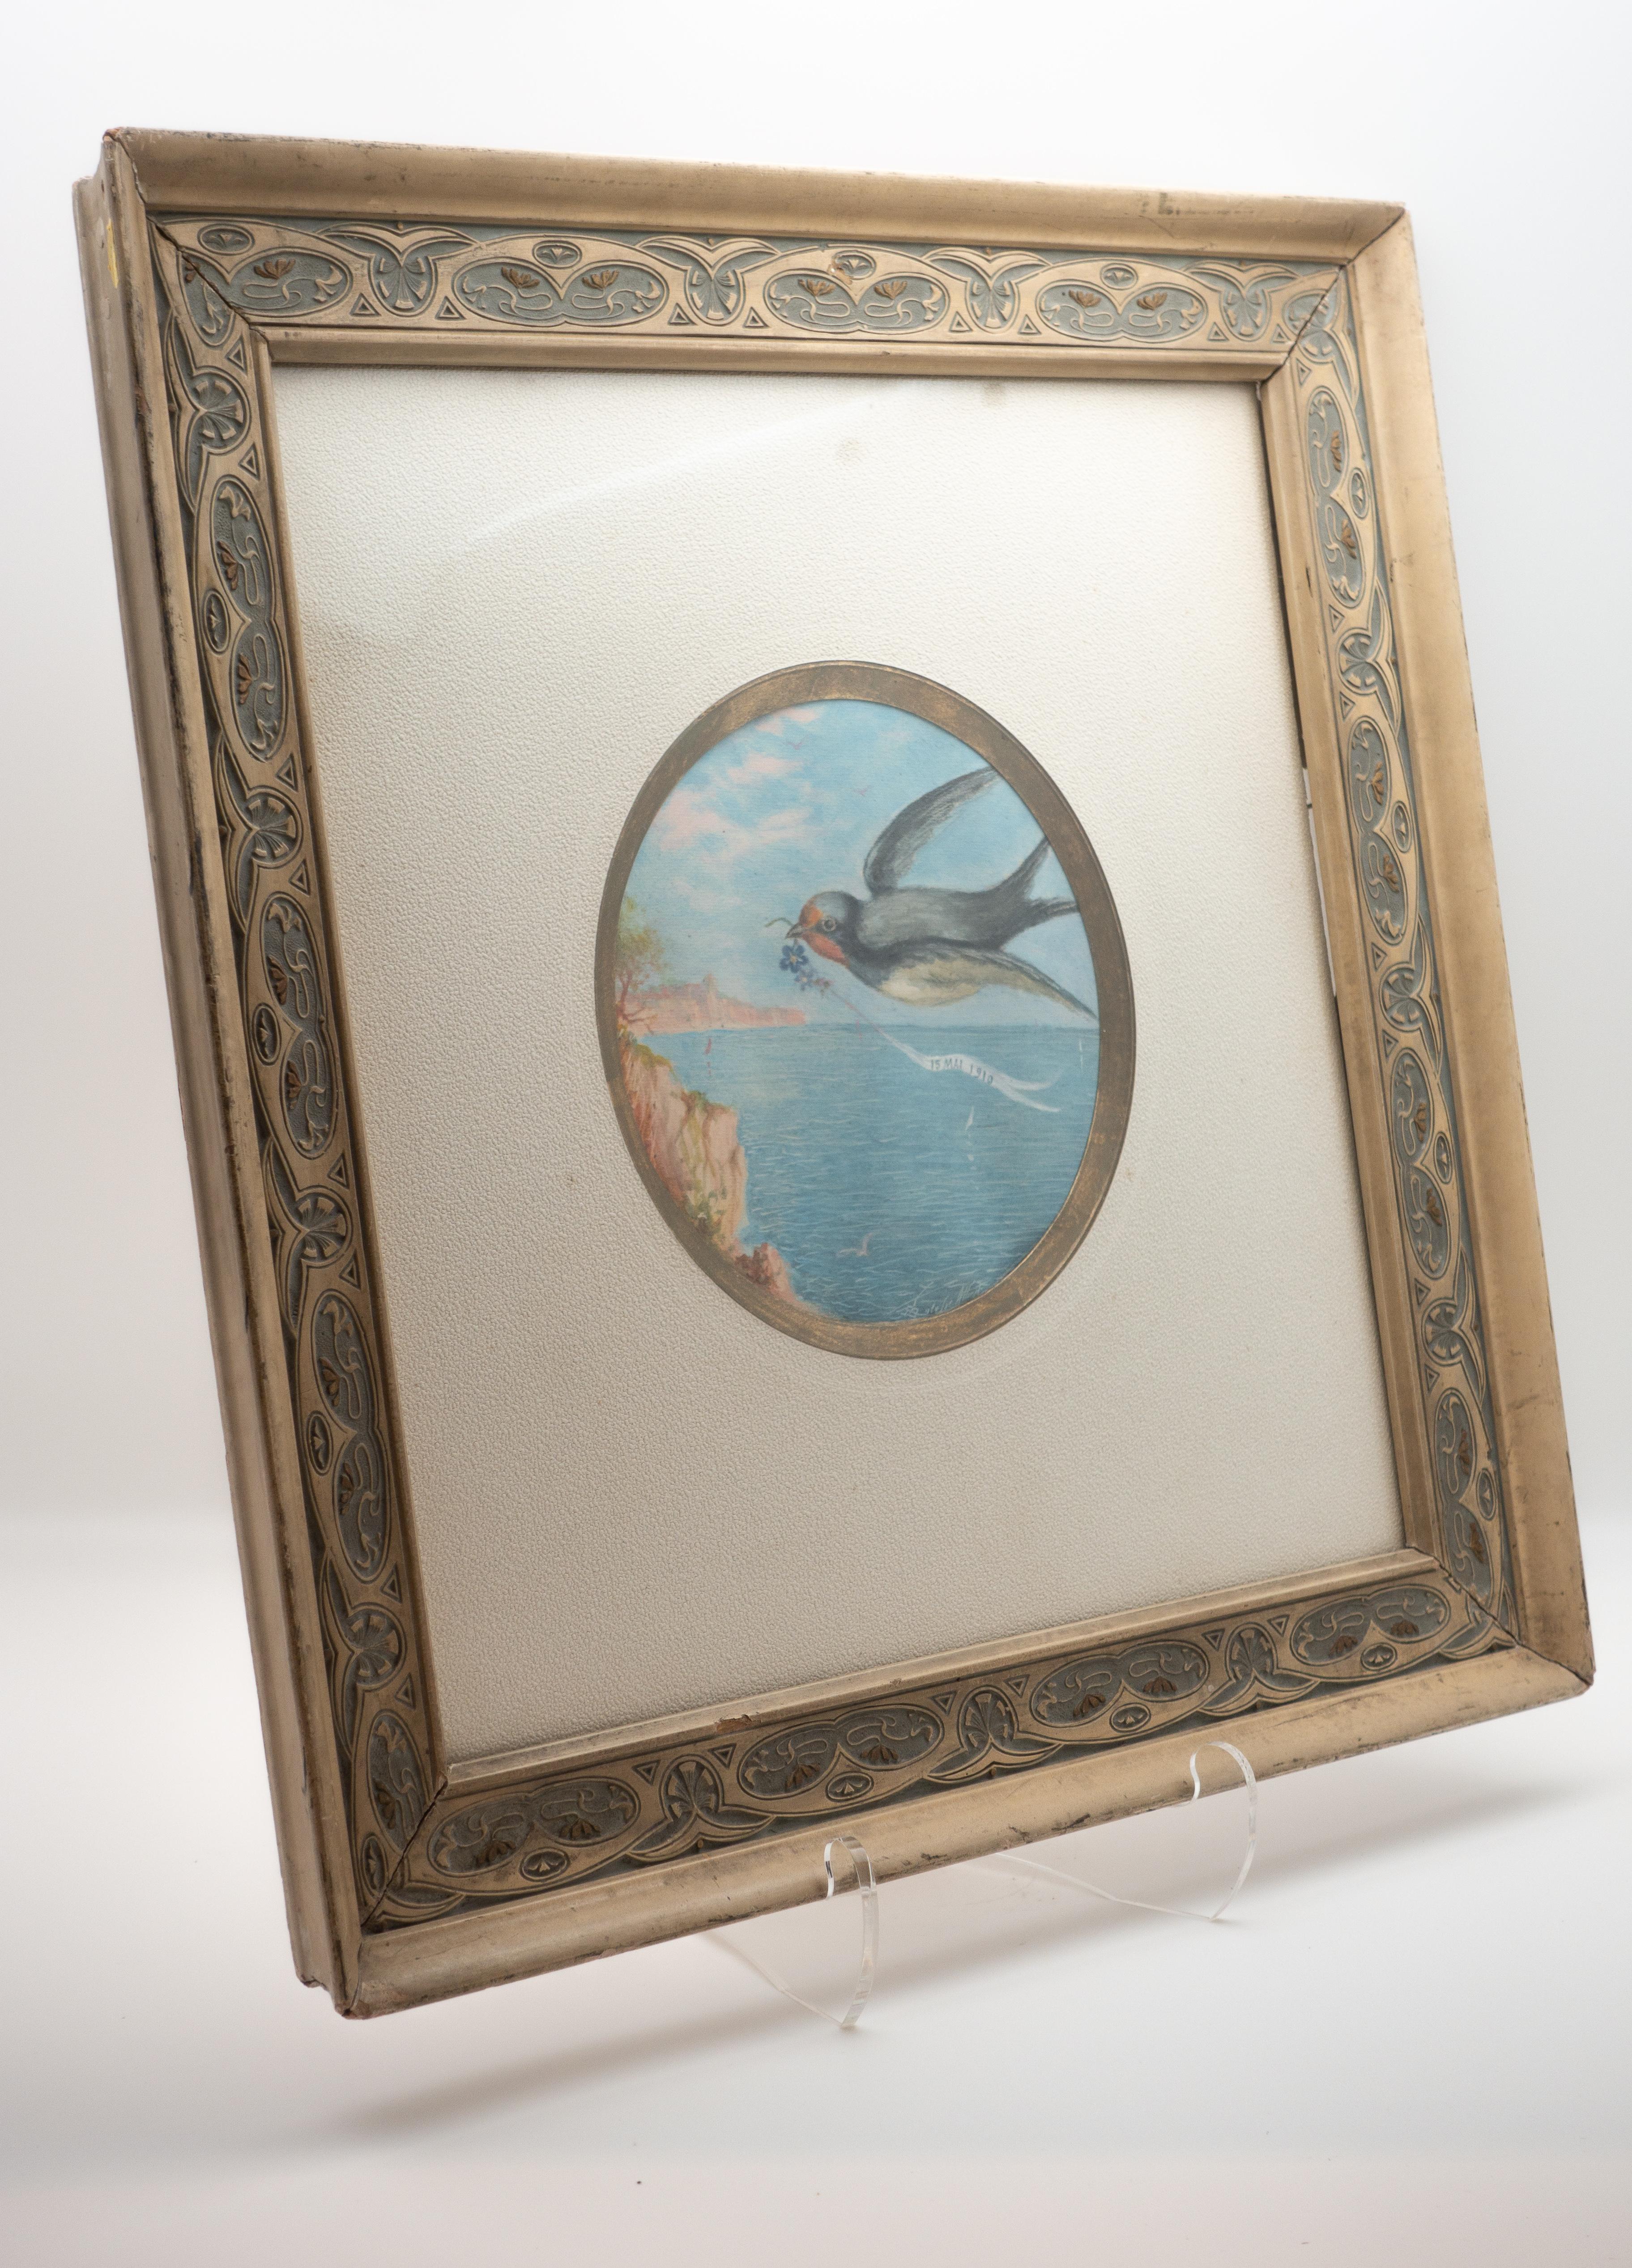 framed bird art